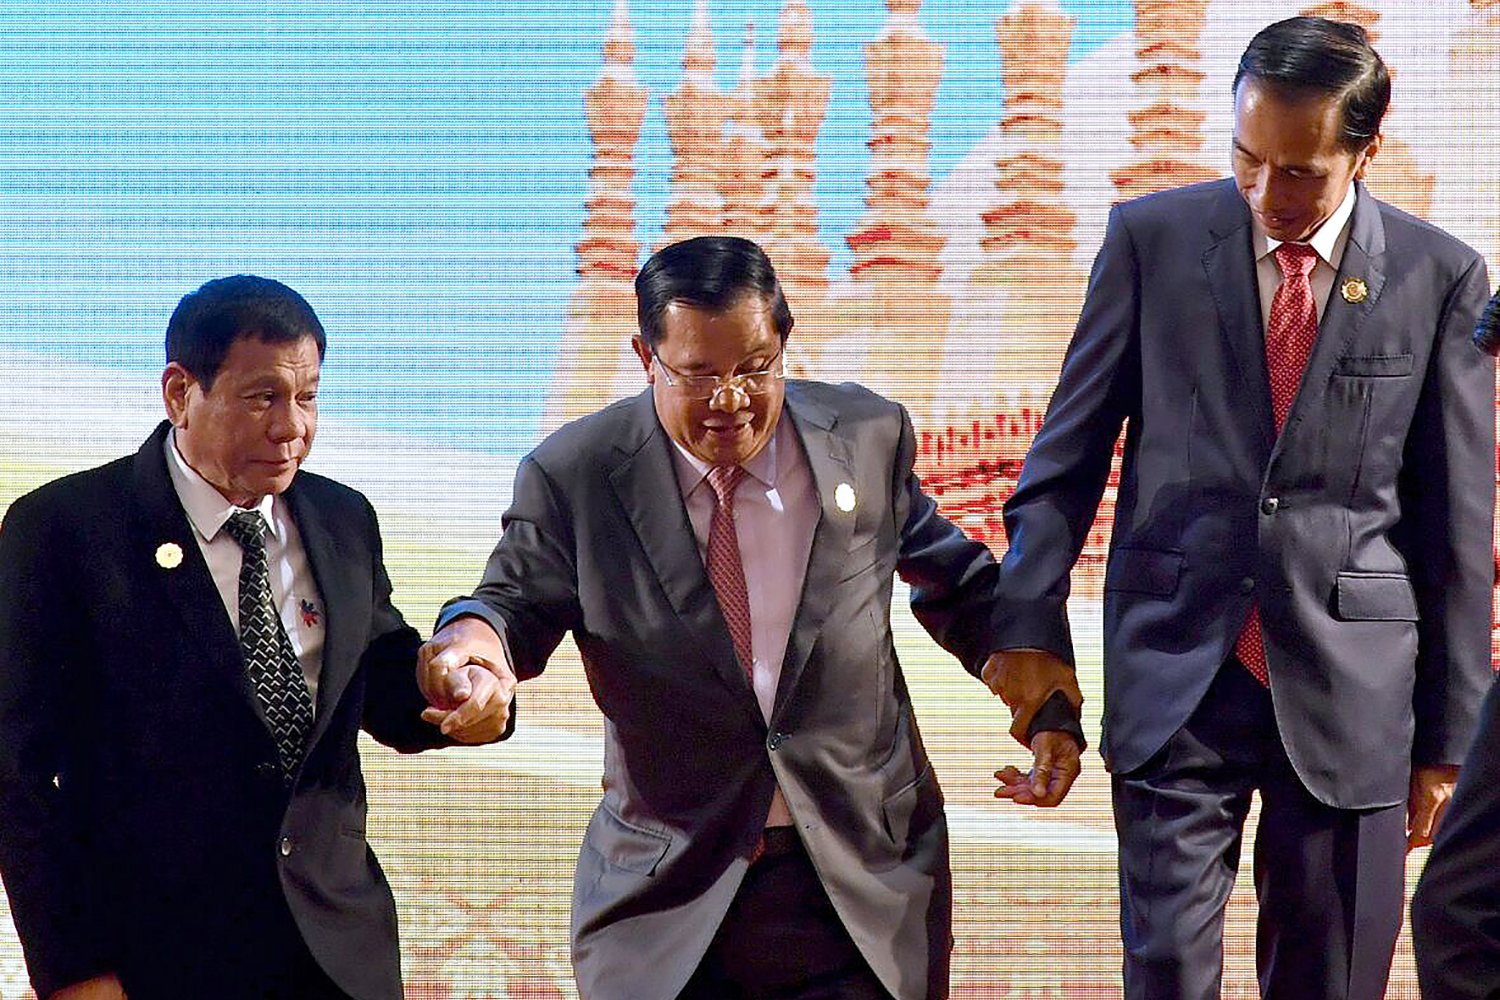 Presiden Joko Widodo bergandengan tangan dengan para pemimpin negara lain saat mengikuti pembukaan Asean Summit ke-28 dan 29 di Vientiane, Laos, Selasa (6/9).